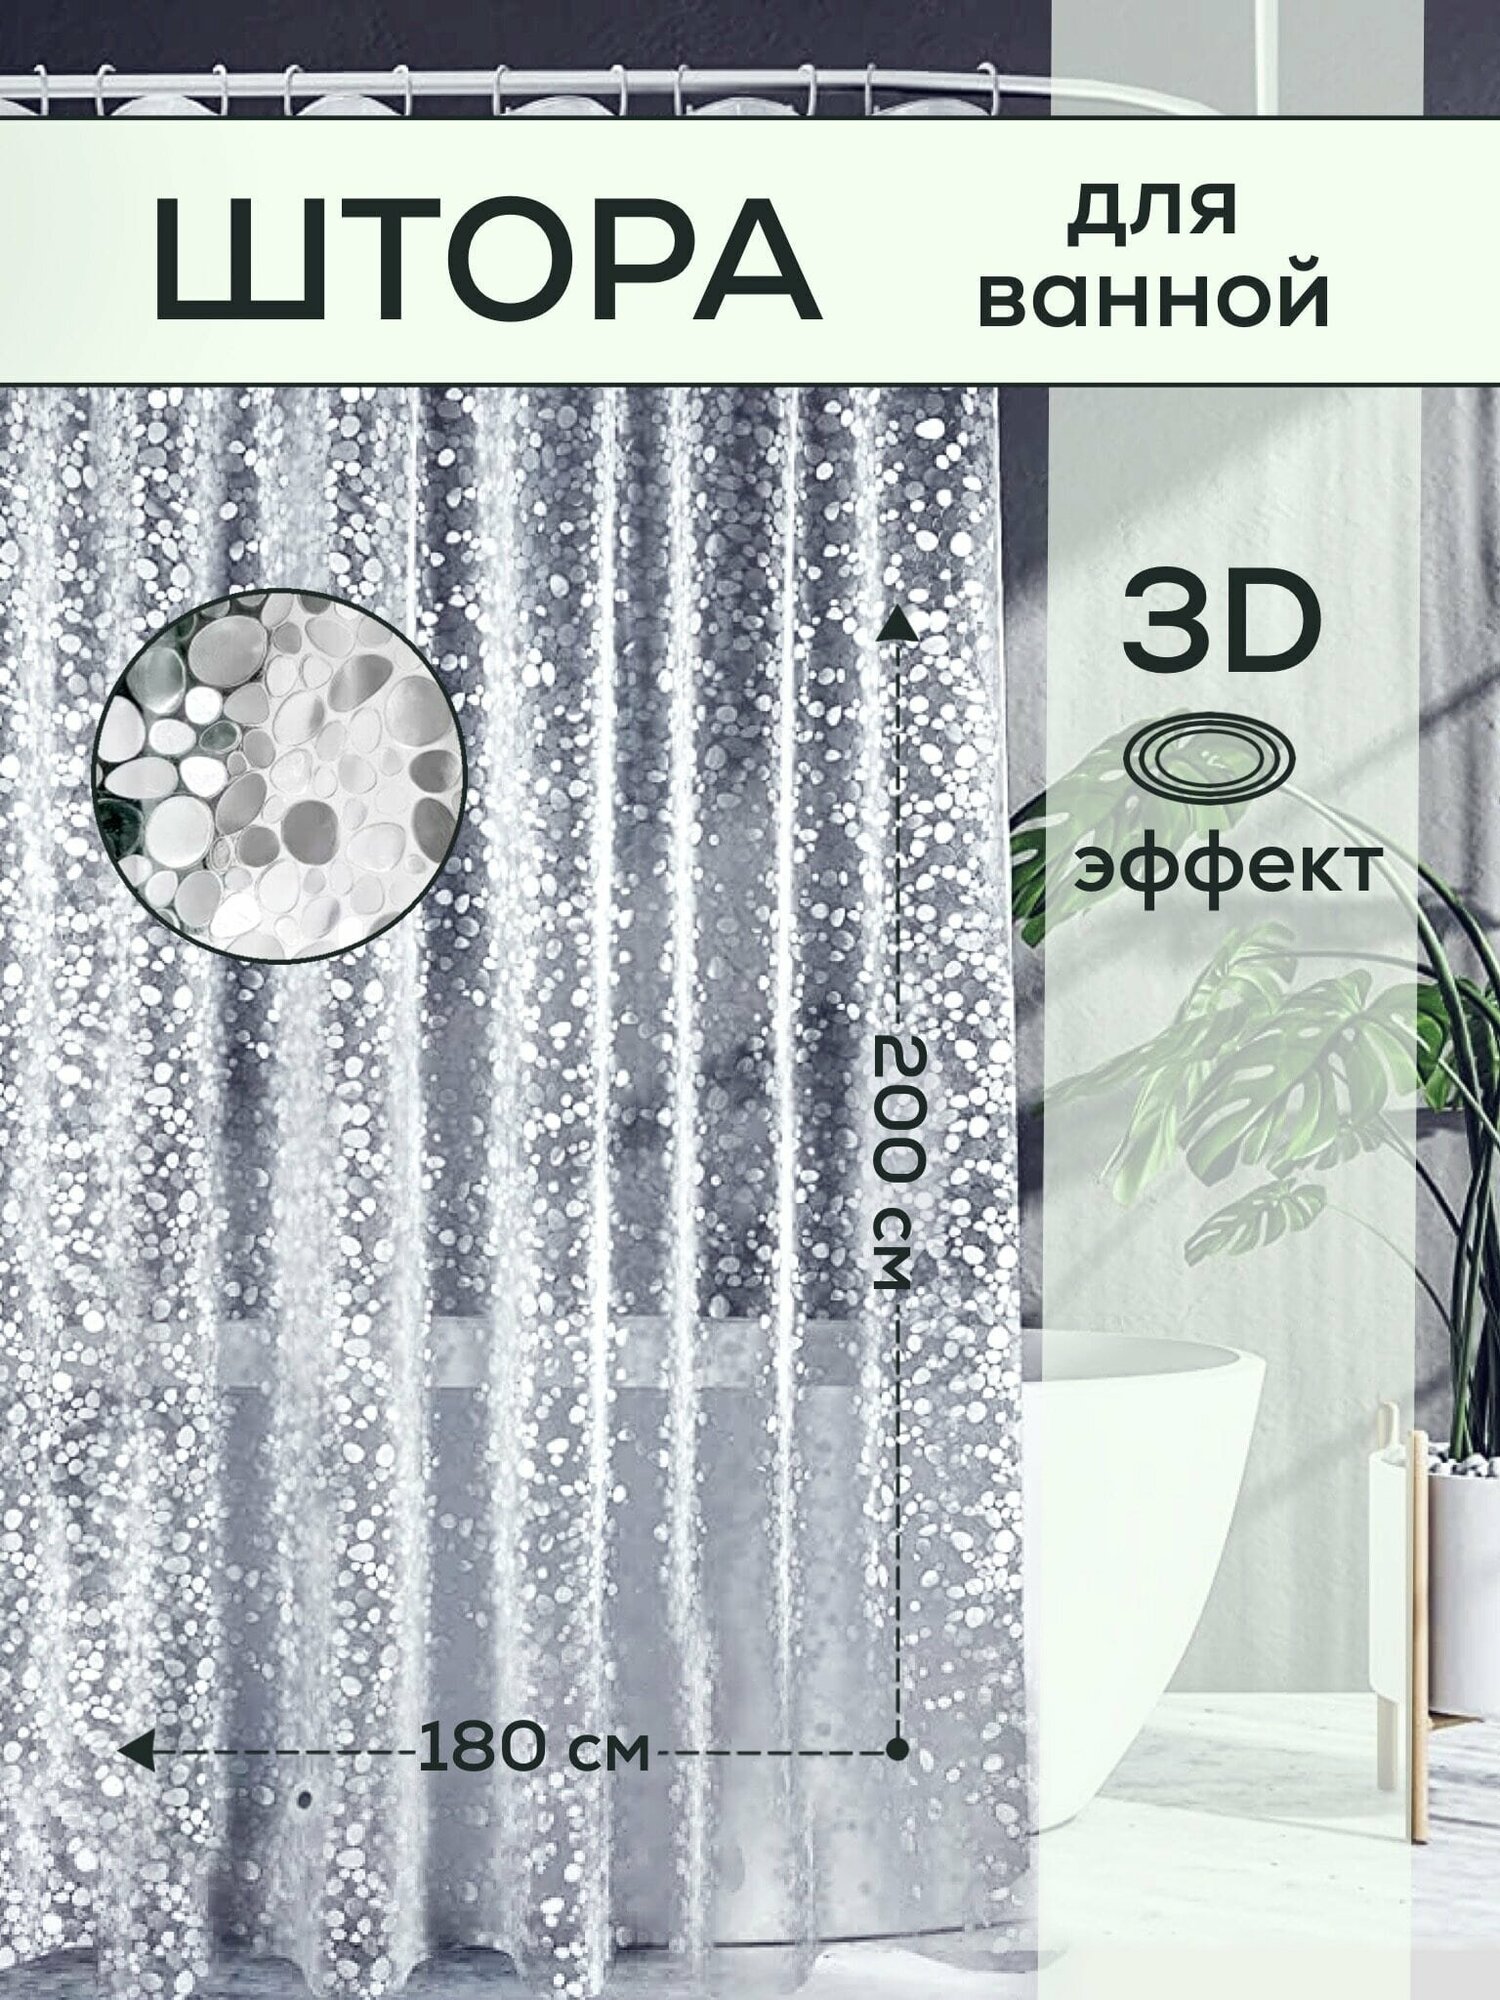 Прозрачная штора для ванной с 3d эффектом 180 x 200, водонепроницаемая, антибактериальная